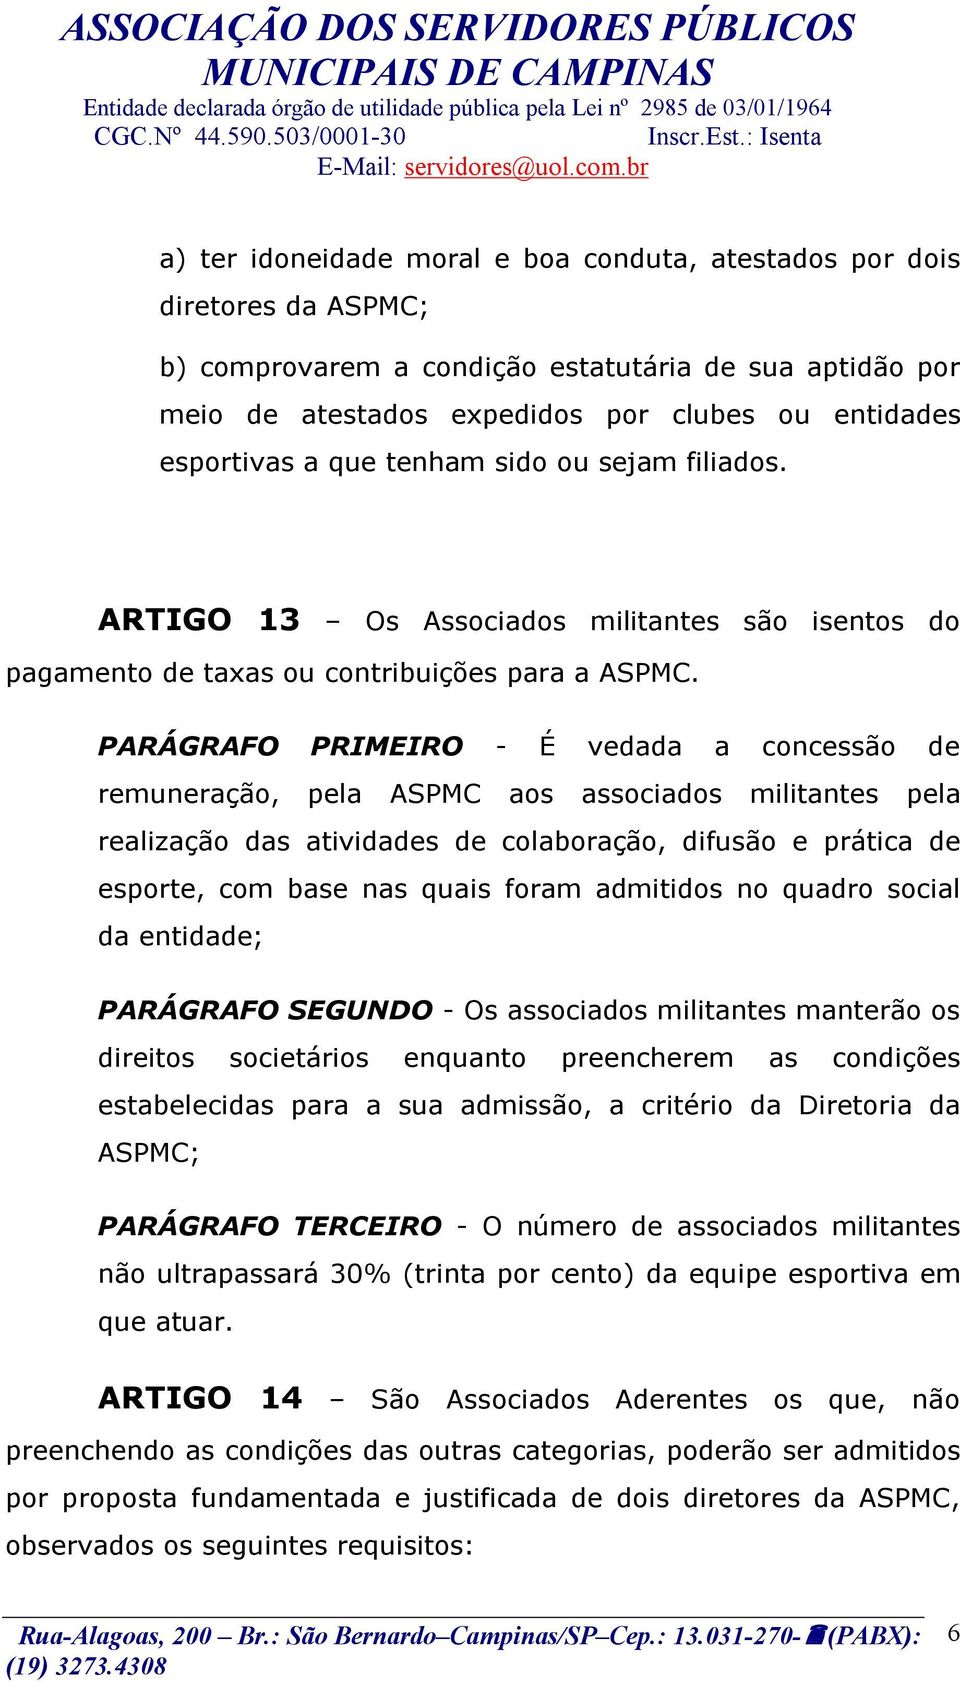 PARÁGRAFO PRIMEIRO - É vedada a concessão de remuneração, pela ASPMC aos associados militantes pela realização das atividades de colaboração, difusão e prática de esporte, com base nas quais foram